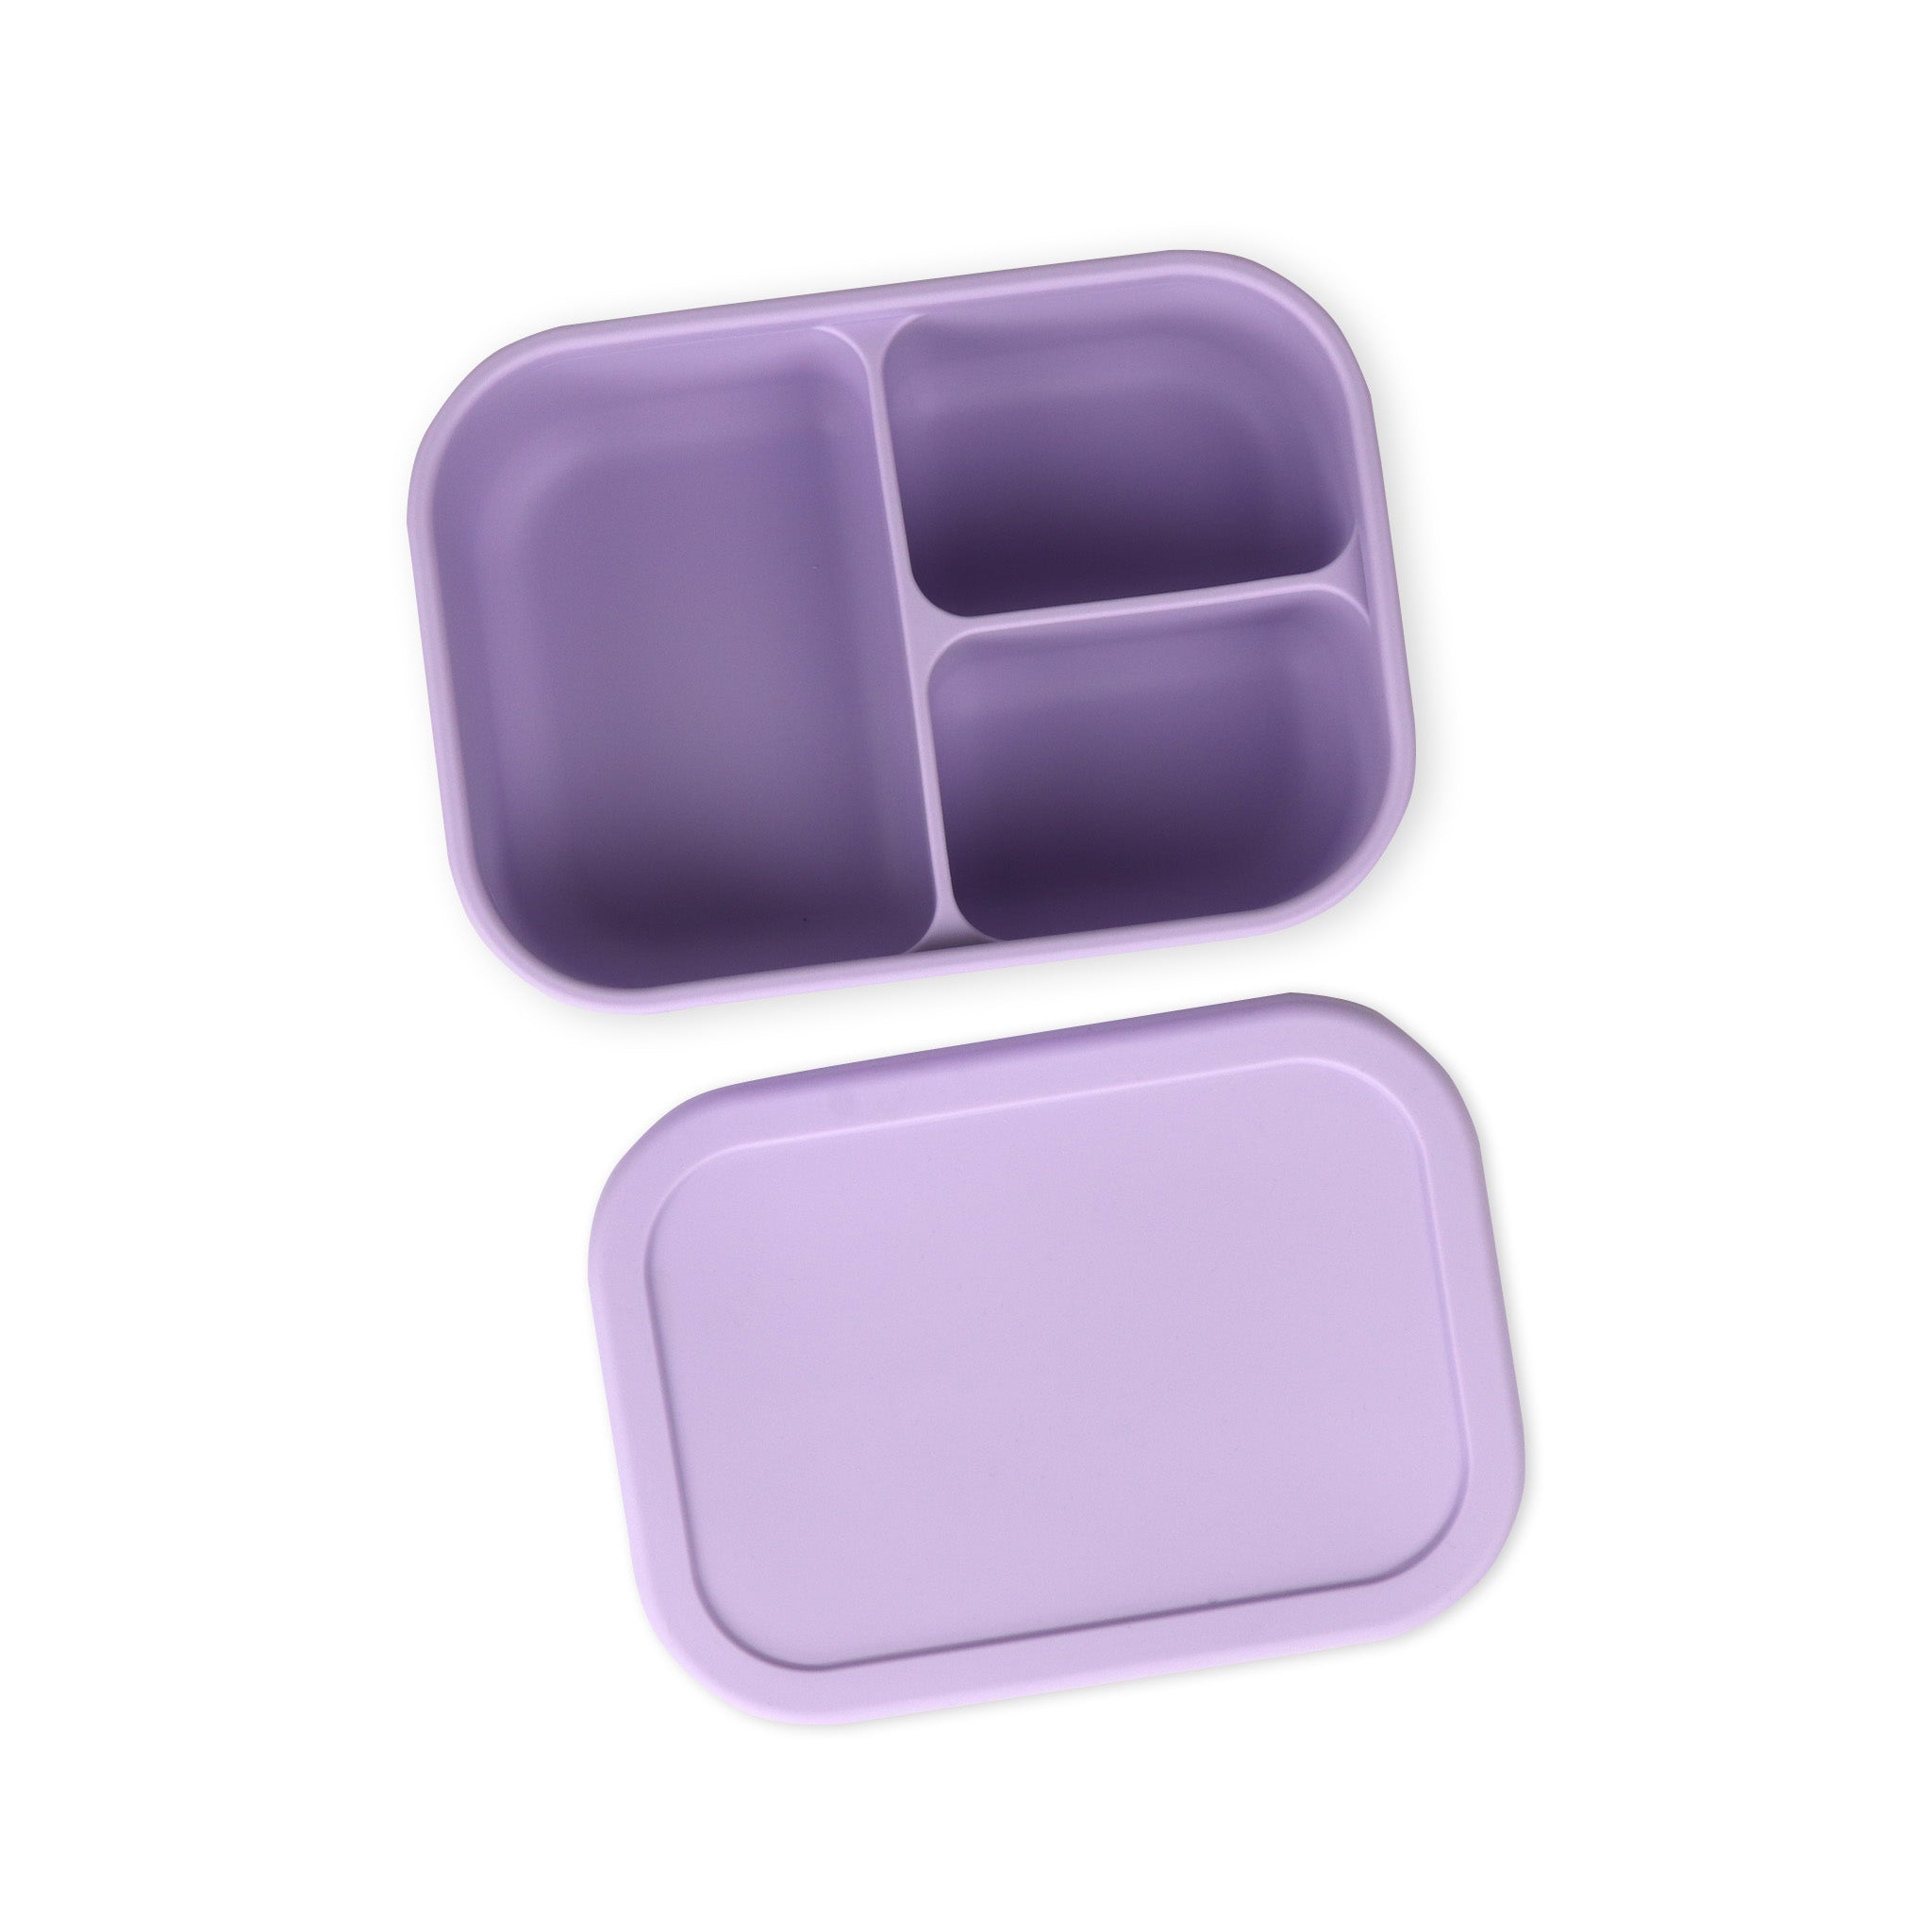 Silicone Bento Box - Standard (Lavender)